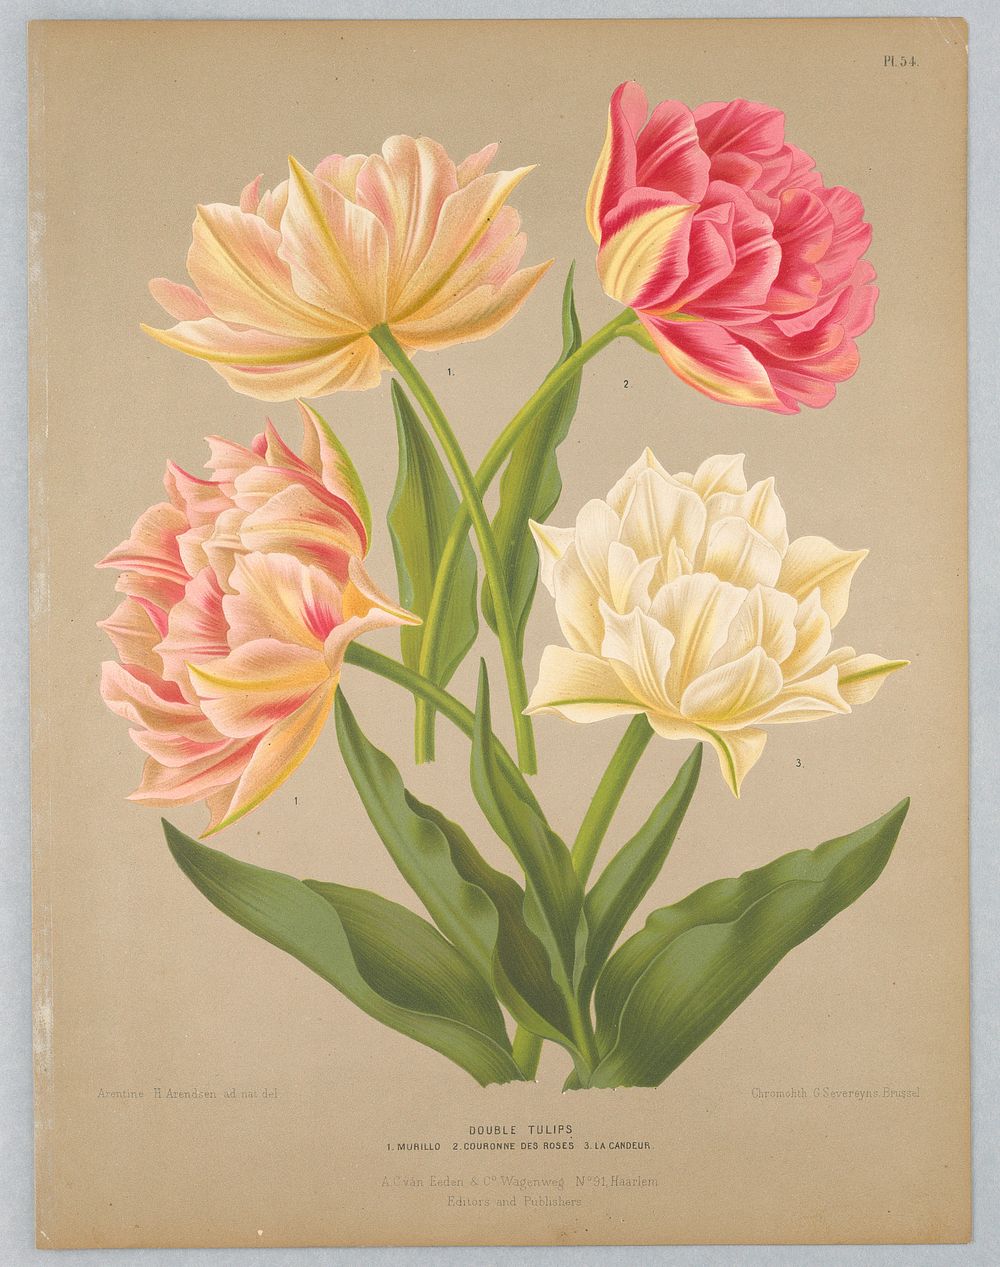 Double Tulips, Plate 54 from A. C. Van Eeden's "Flora of Haarlem"